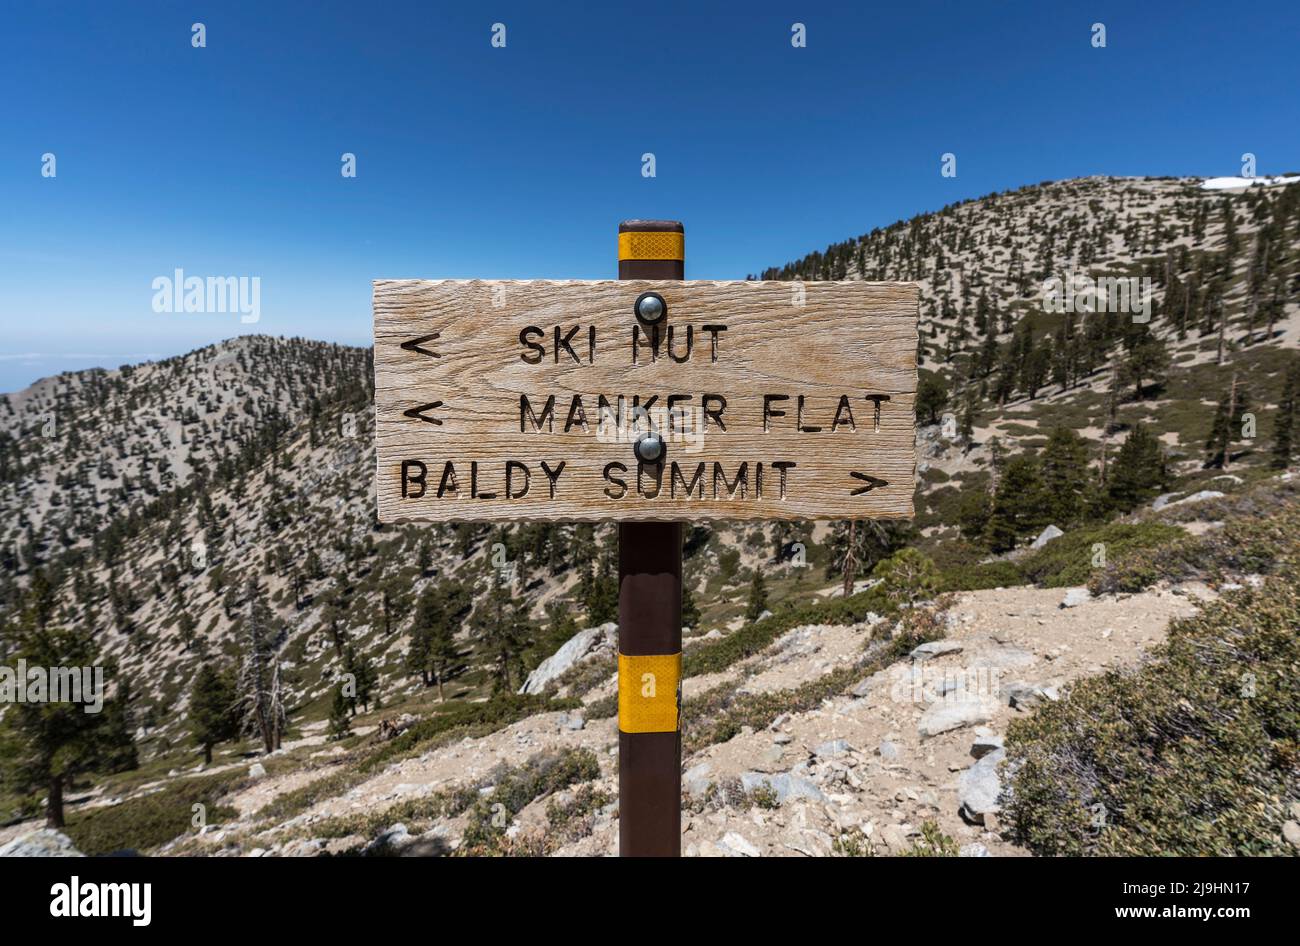 Mt Baldy, señal de sendero de Manker Flat en las Montañas San Gabriel cerca de Los Angeles, California. Foto de stock